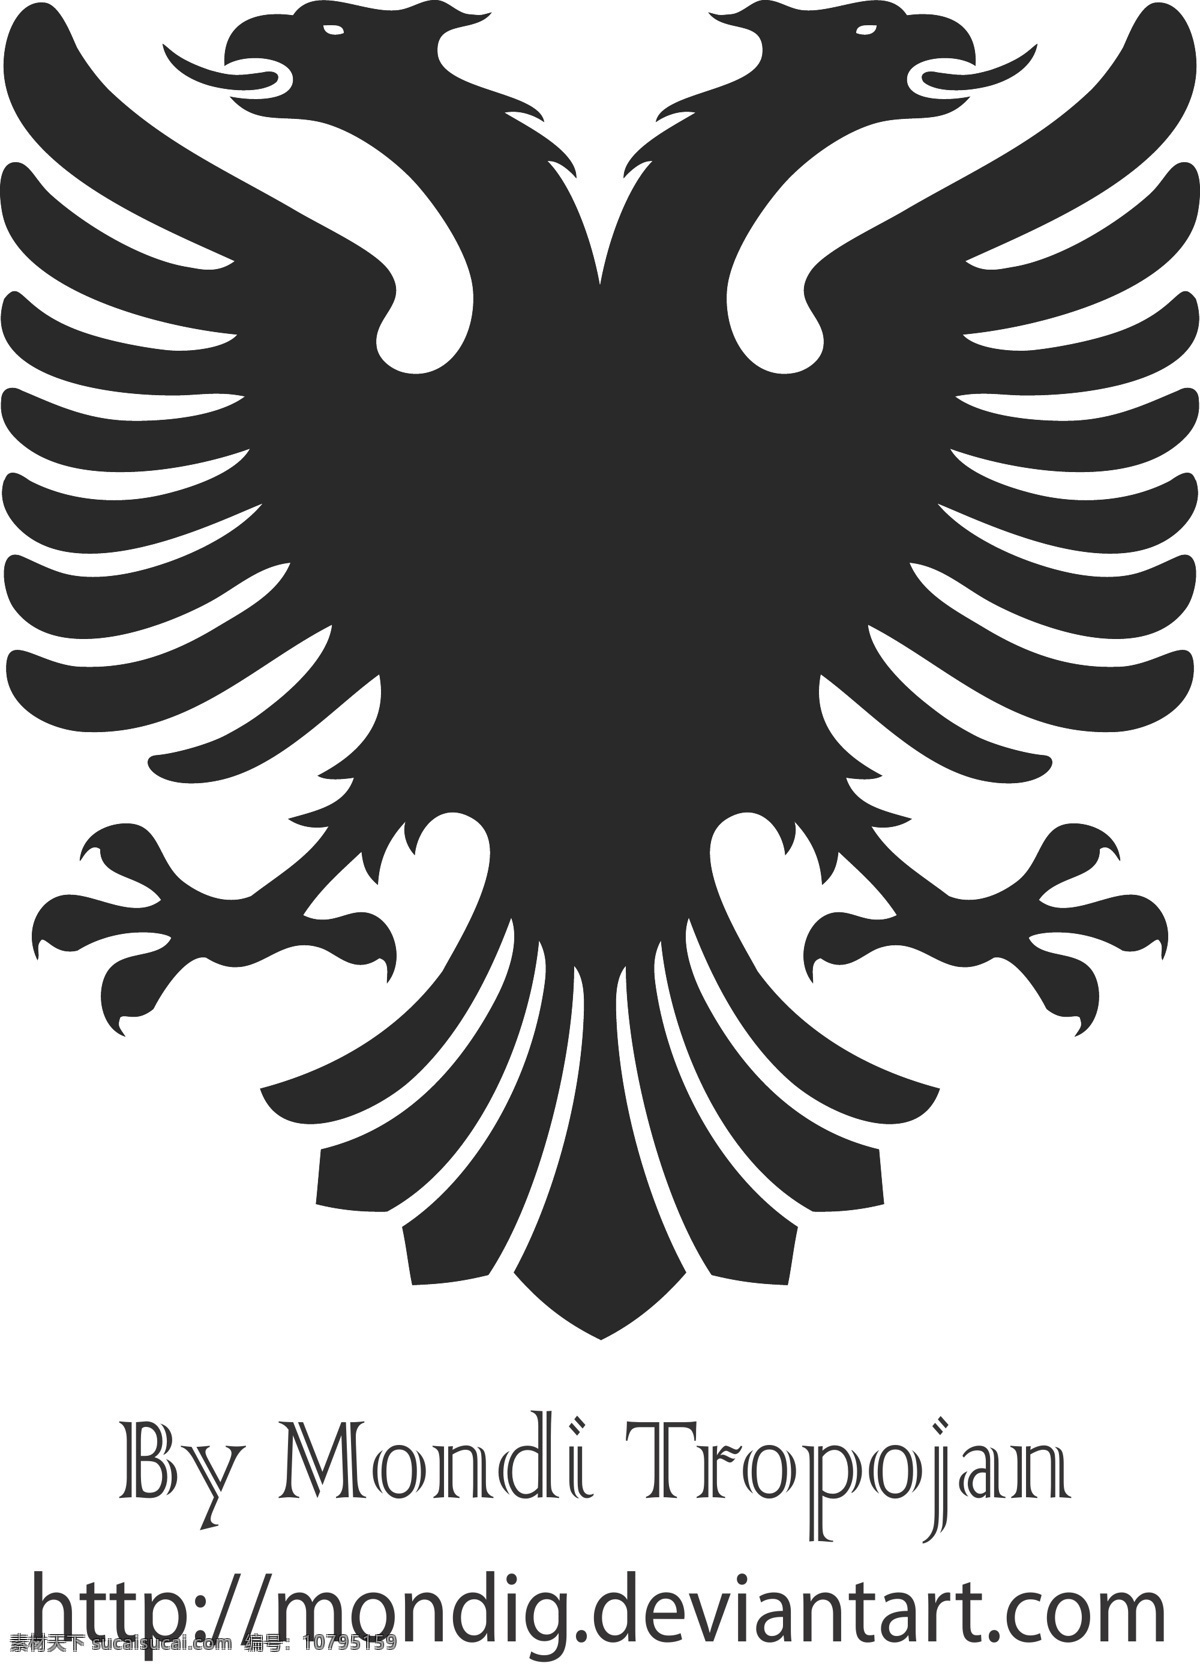 阿尔巴尼亚 向量 鹰 纹章 heraldry 结合矢量 白色